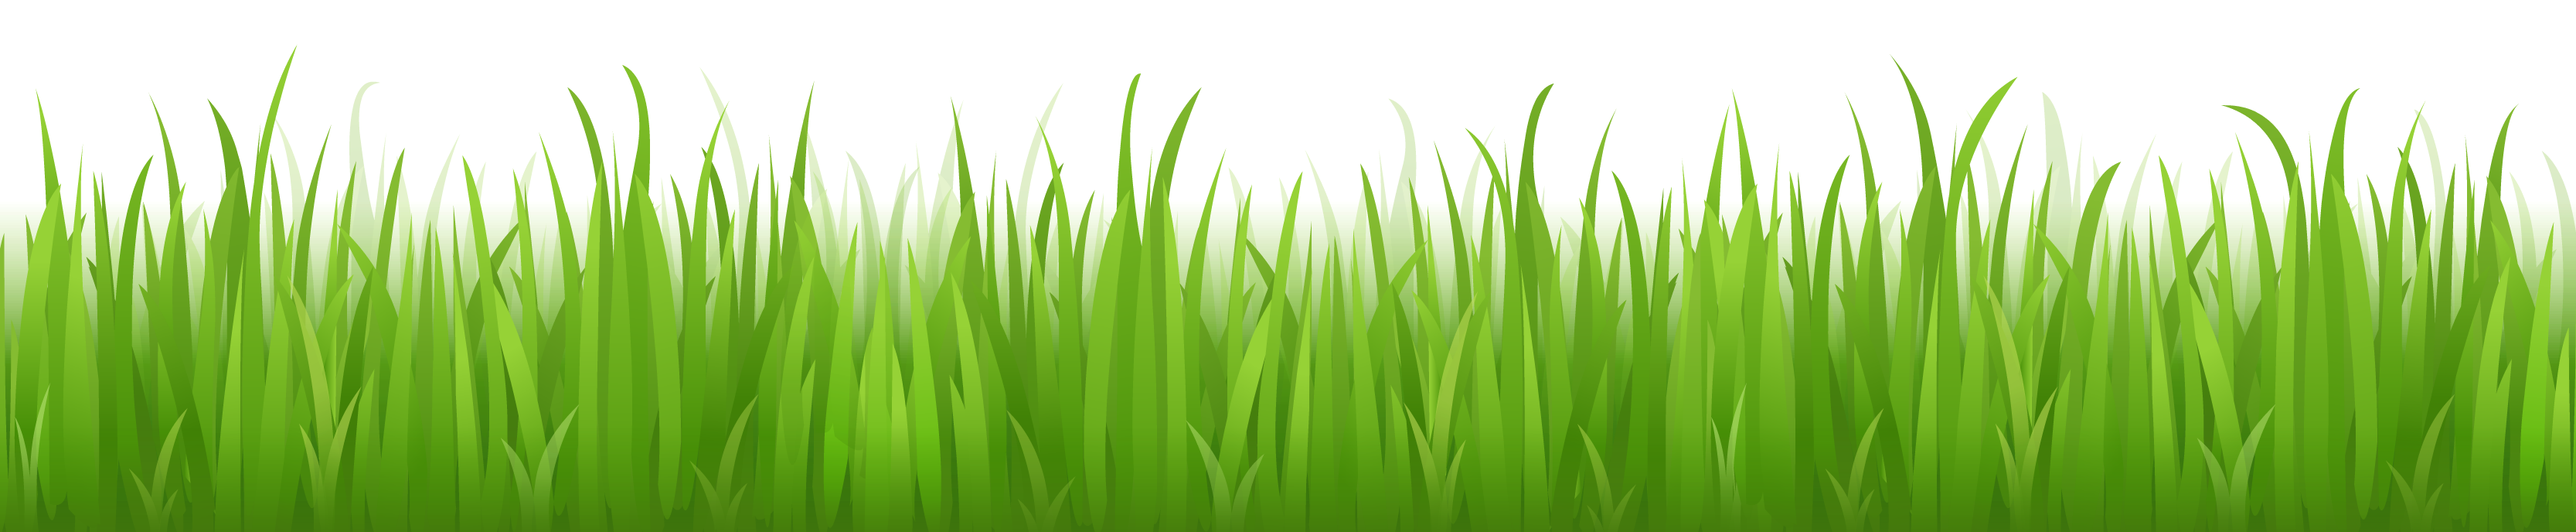 Summer Clip Art Grass Field – Clipart Free Download